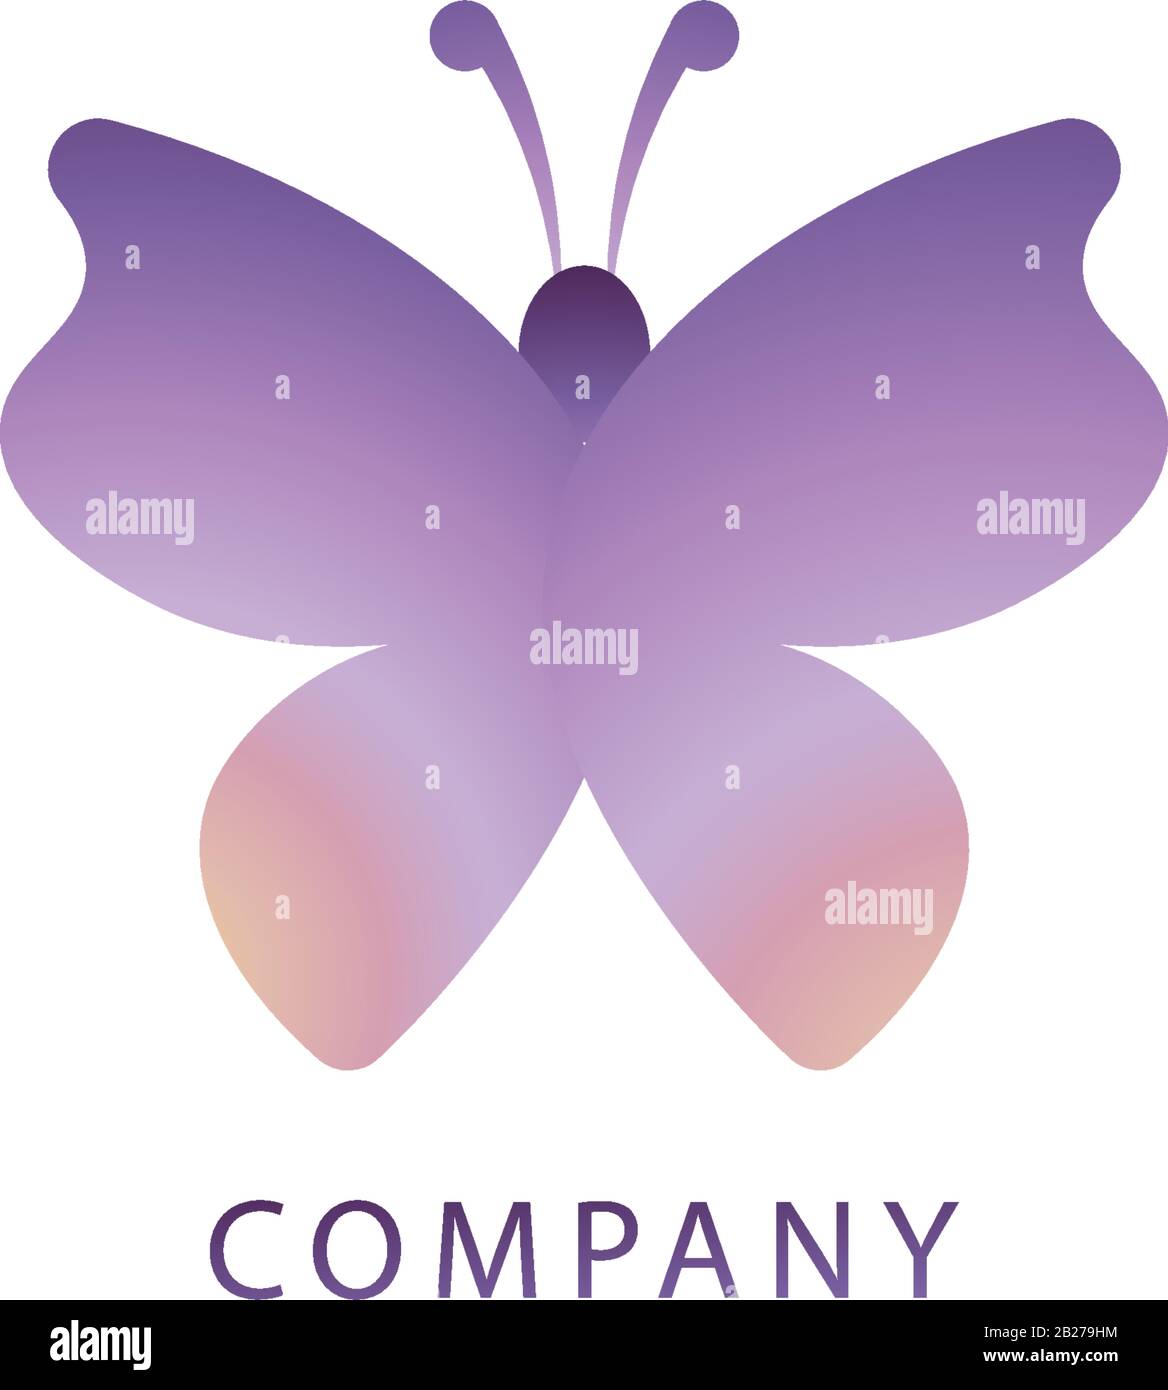 Disegno astratto del logo Butterfly illustrato dall'alto. Concetto di logo animale Isolato su sfondo bianco. Colore Di Gradazione Violet Beige. Illustrazione Vettoriale